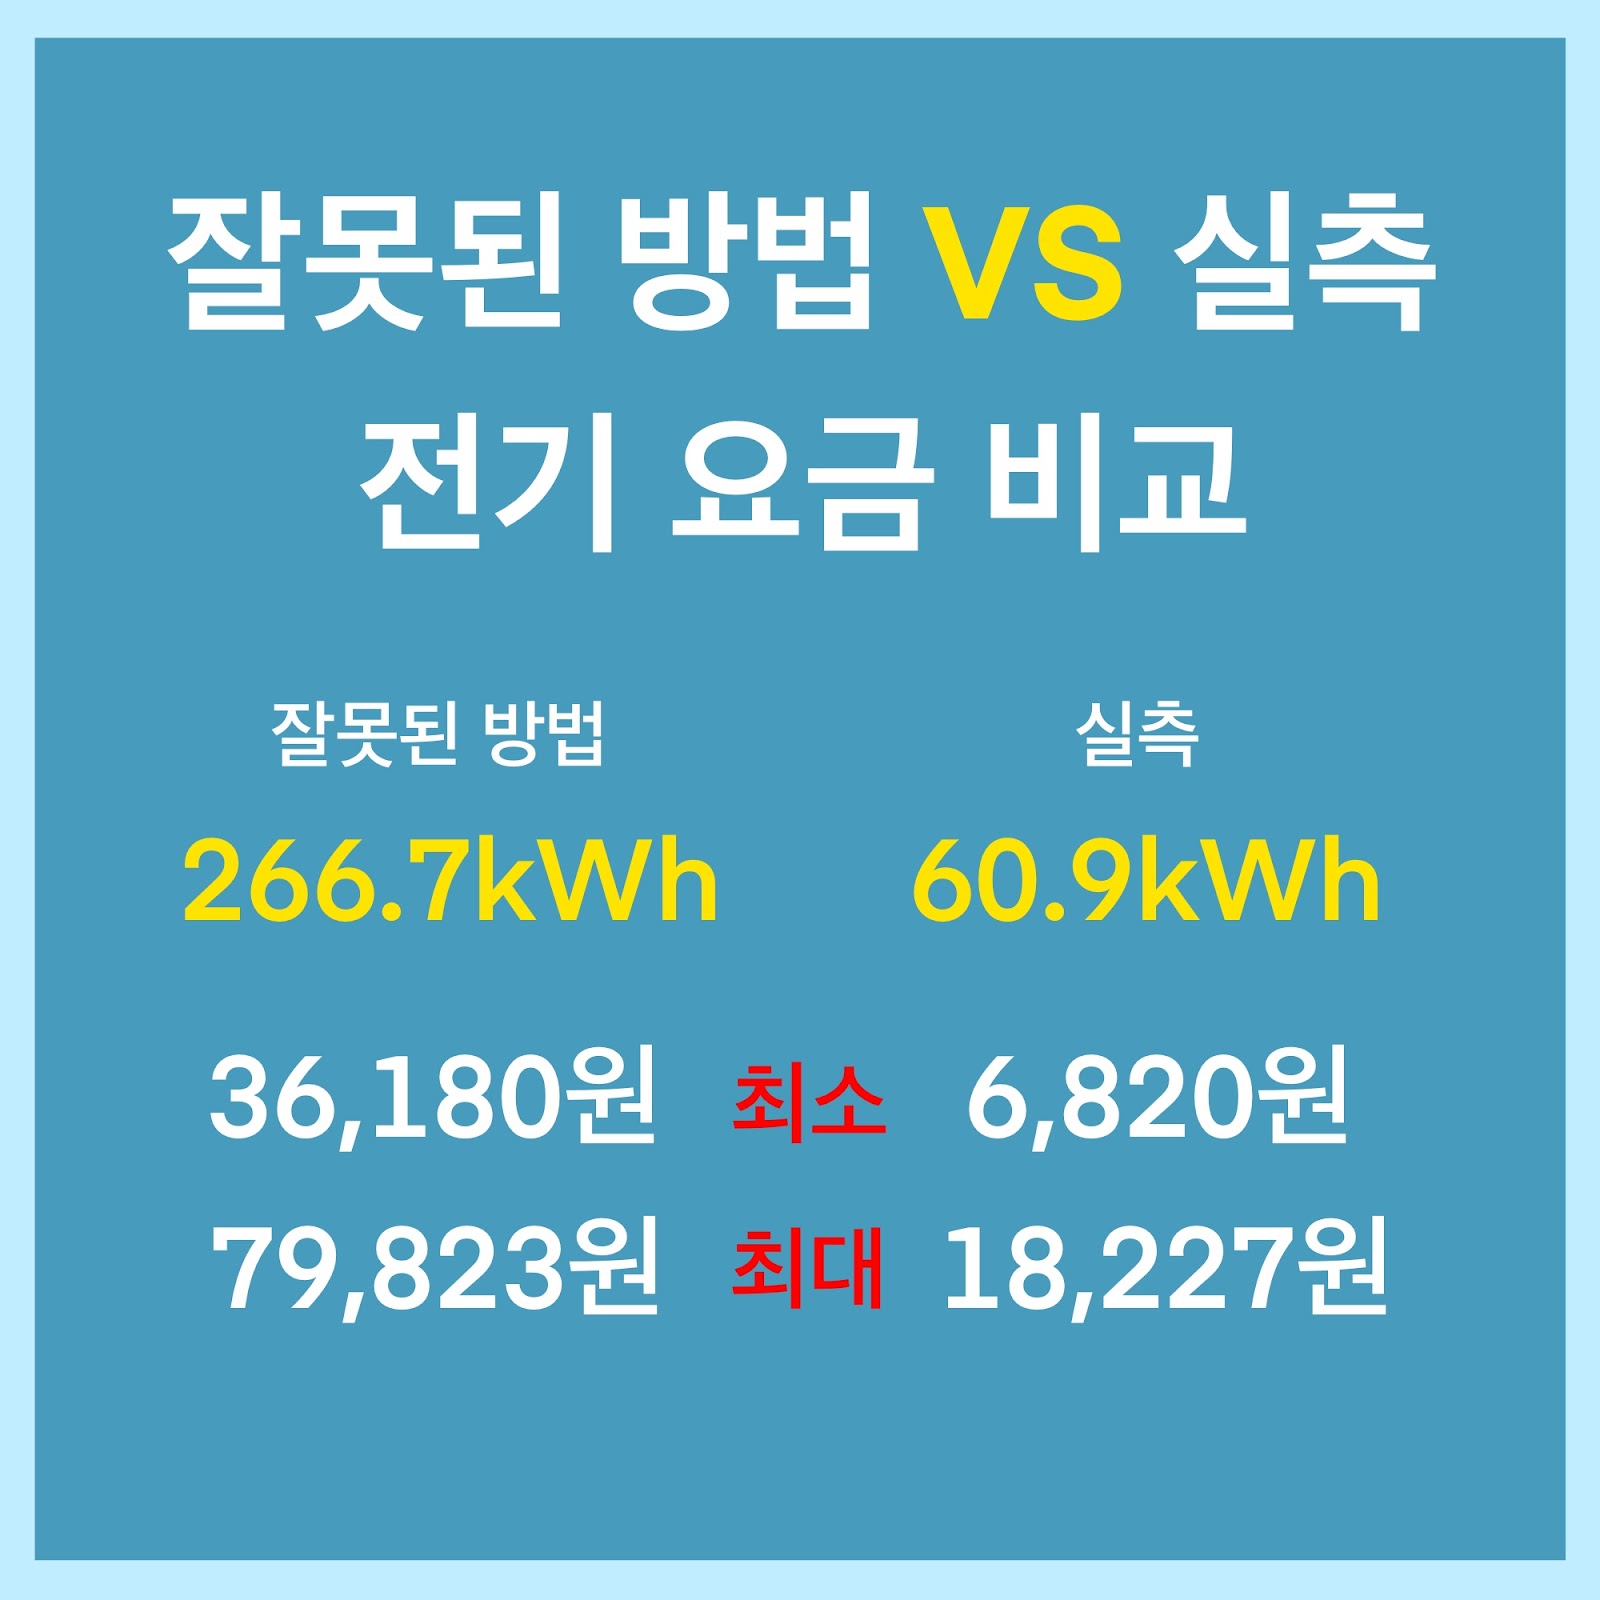 [그림 04] 잘못된 방법으로 계산한 전기 요금과 실측으로 계산한 전기 요금 차이